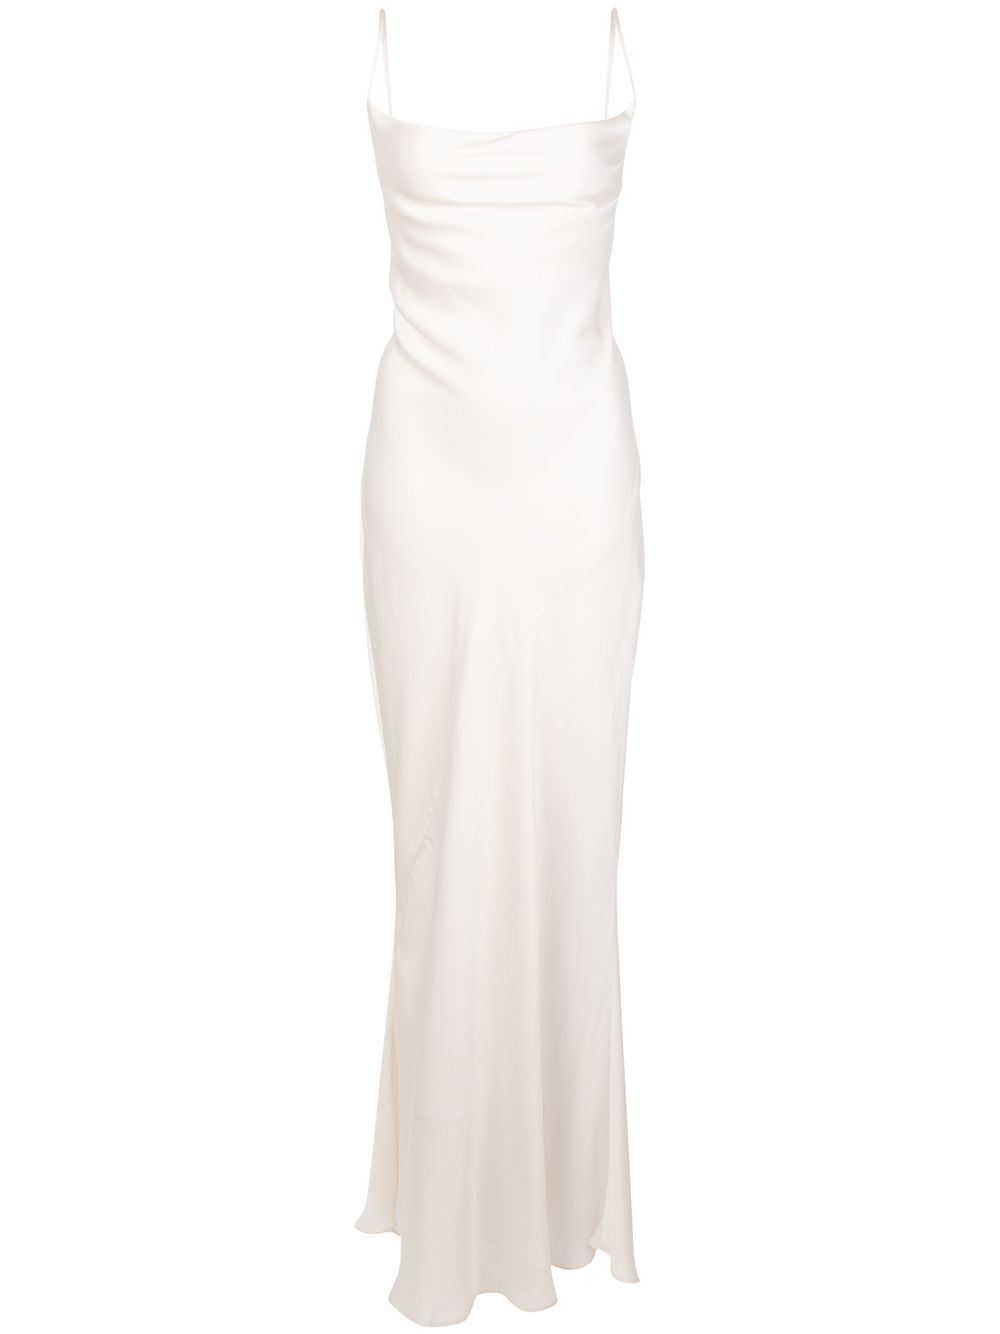 white maxi cami dress